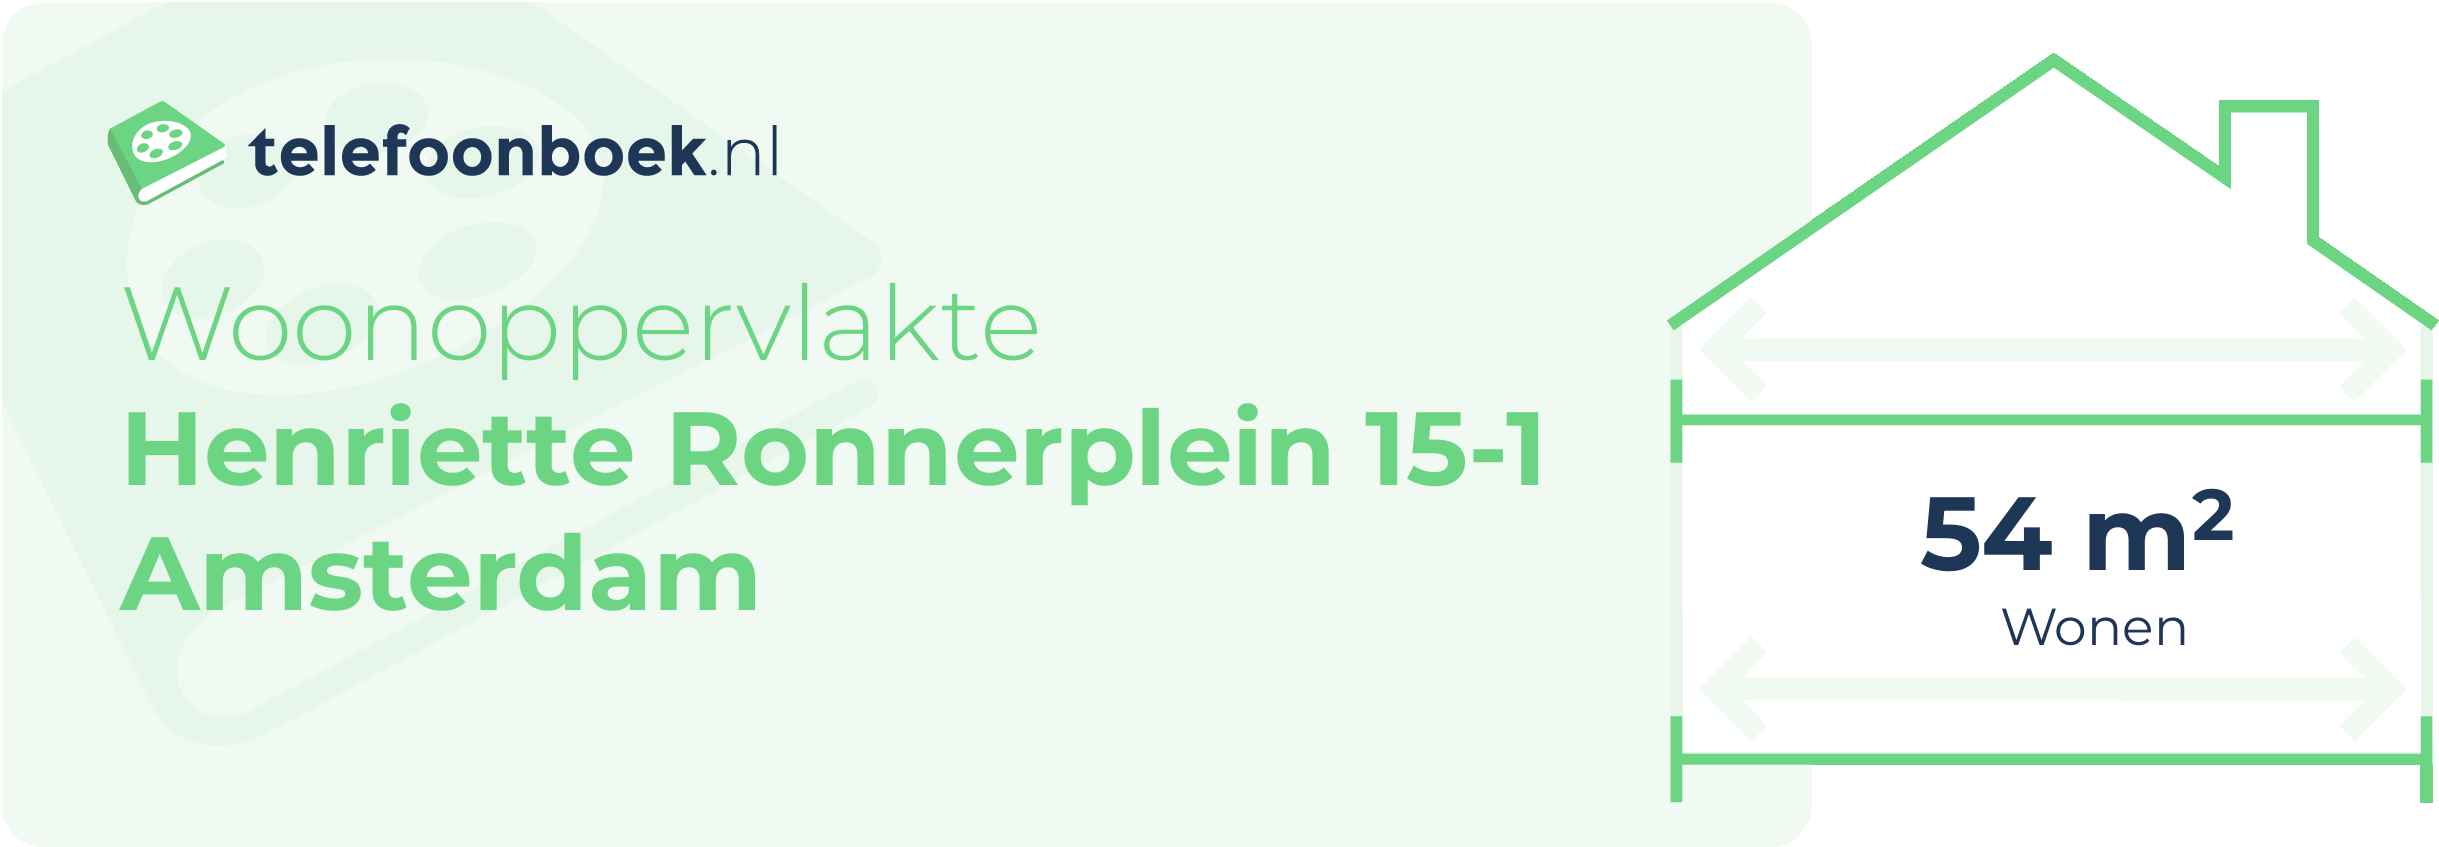 Woonoppervlakte Henriette Ronnerplein 15-1 Amsterdam